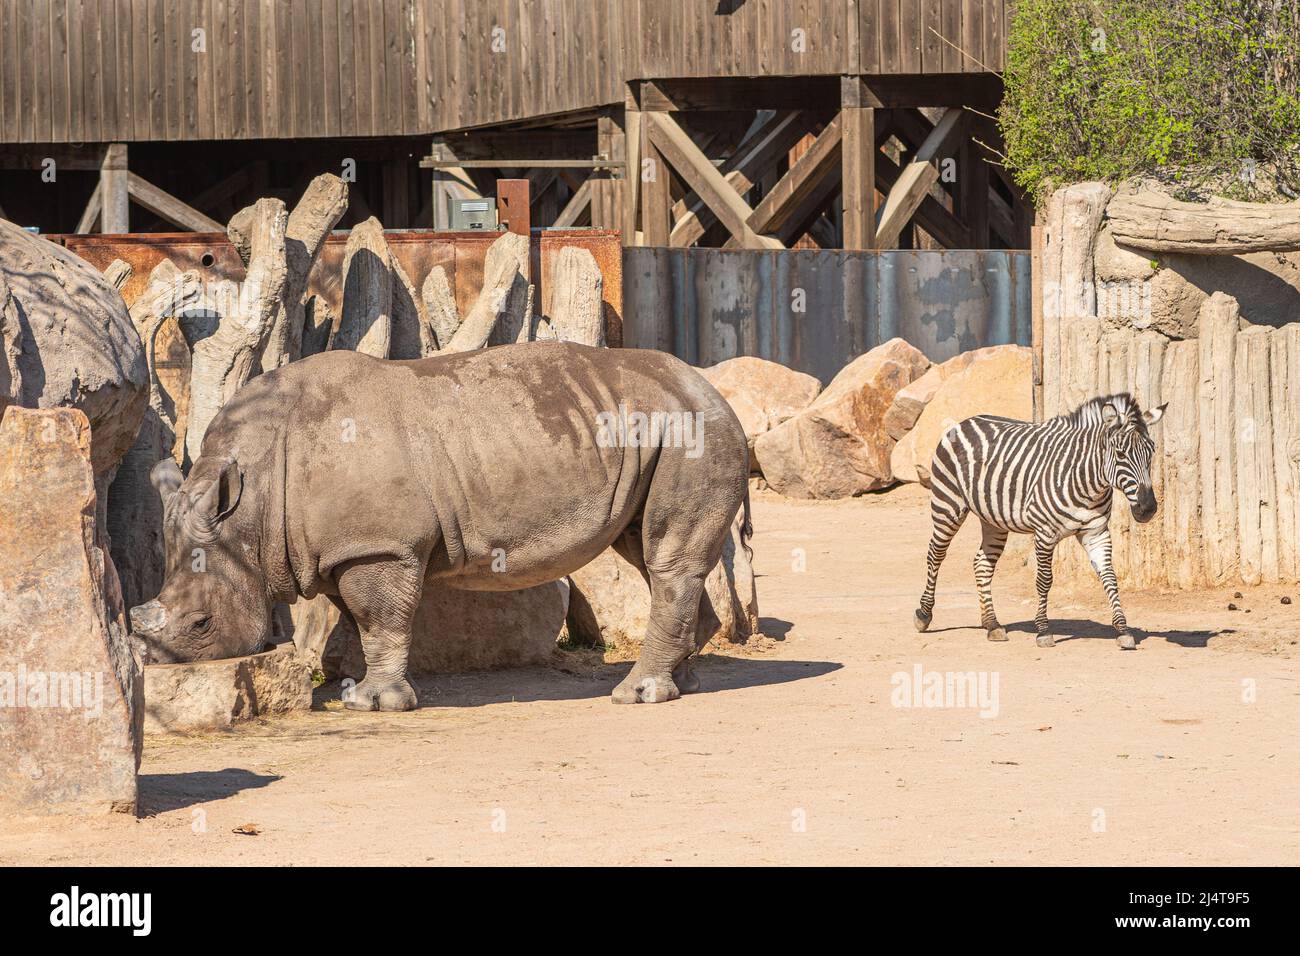 Hermosas llanuras cebra o cebras, hippotigris, equinos africanos con distintivos negros y blancos capas rayadas y macho de rinoceronte gris Foto de stock